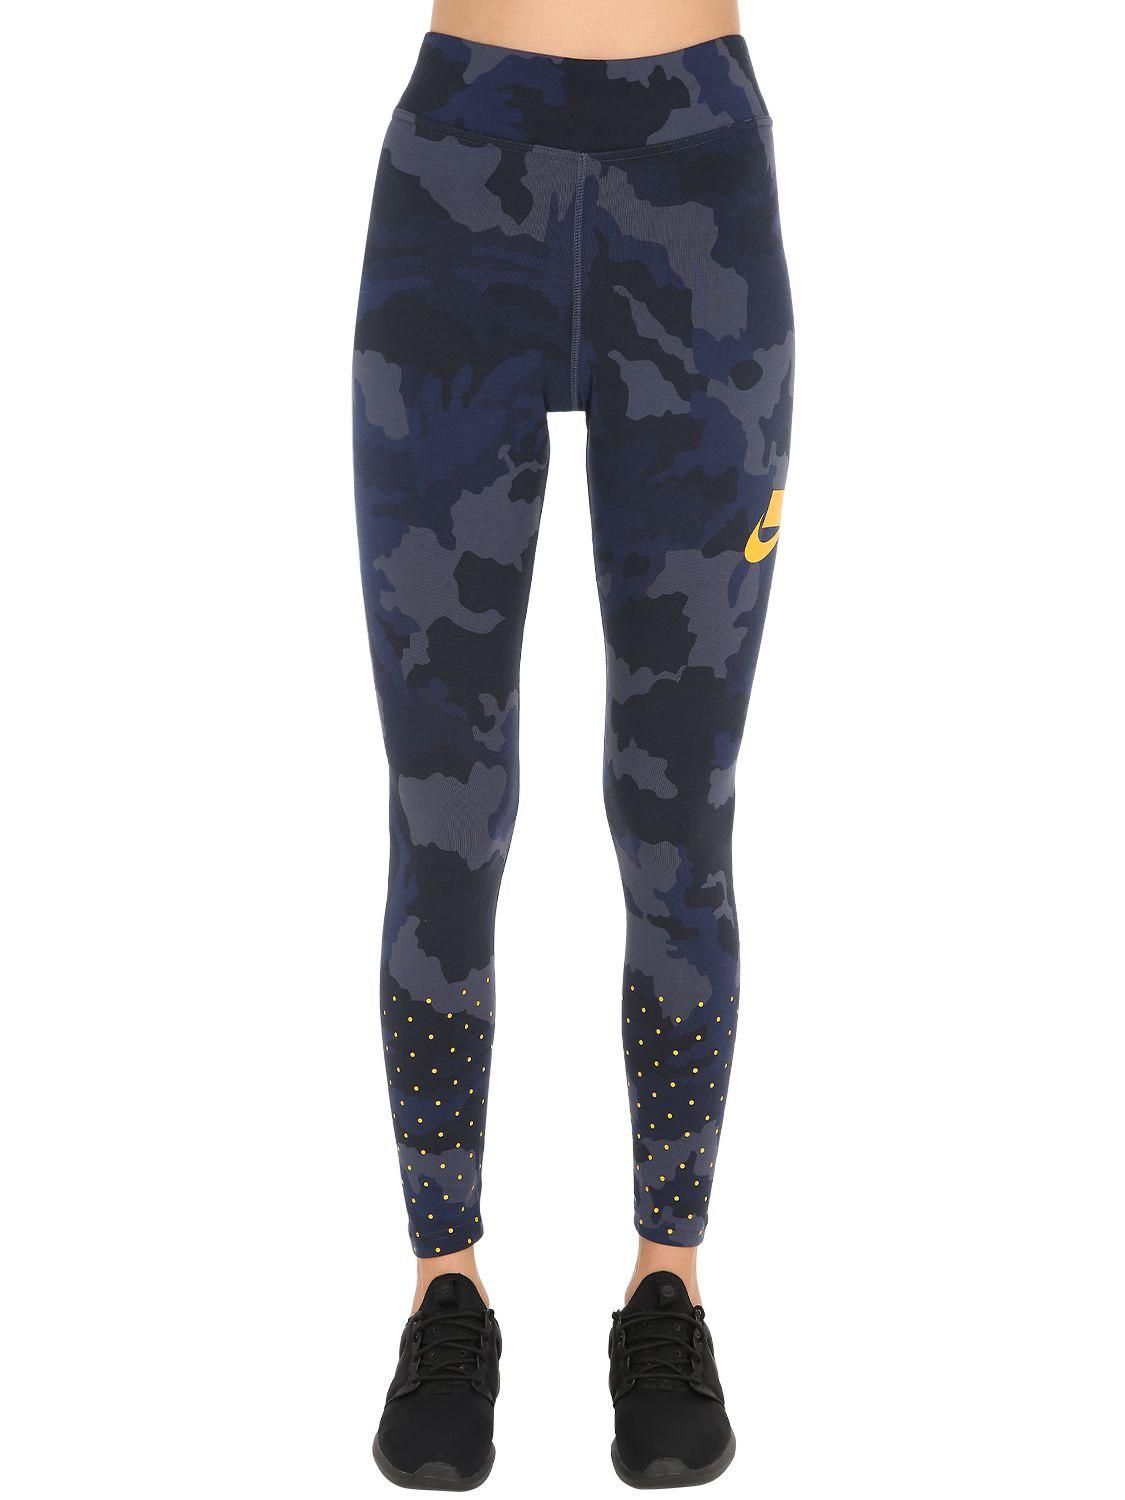 Nike Sportswear Camo Leggings in Blue Camo (Blue) - Lyst